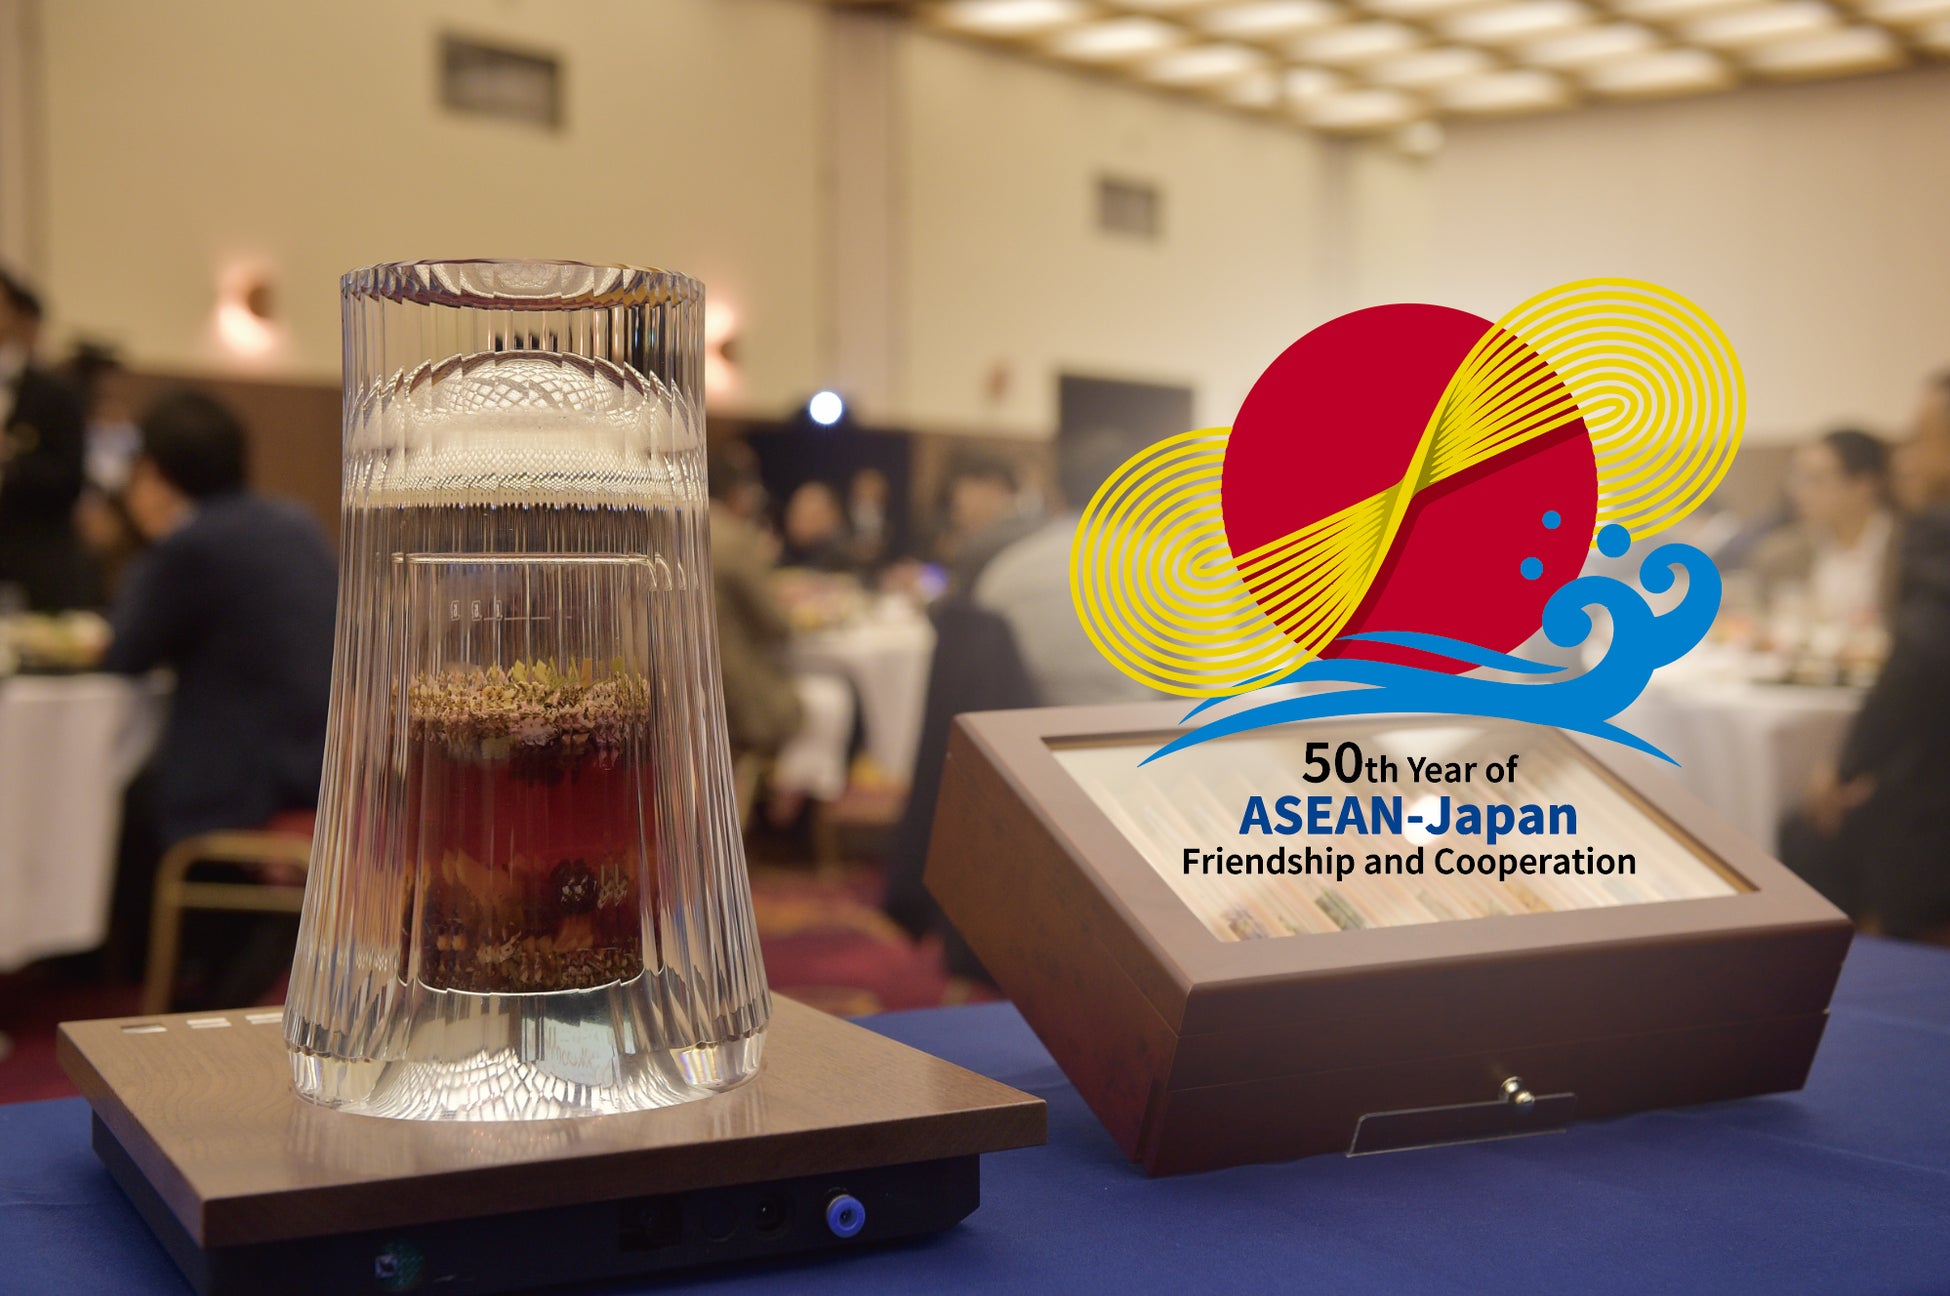 「日ASEANヤングビジネスリーダーズサミット・Z世代ビジネスリーダーズサミット」にてウェルカムドリンクを『COLDRAW』と共同制作しエクスカーションにて伝統文化体験を提供